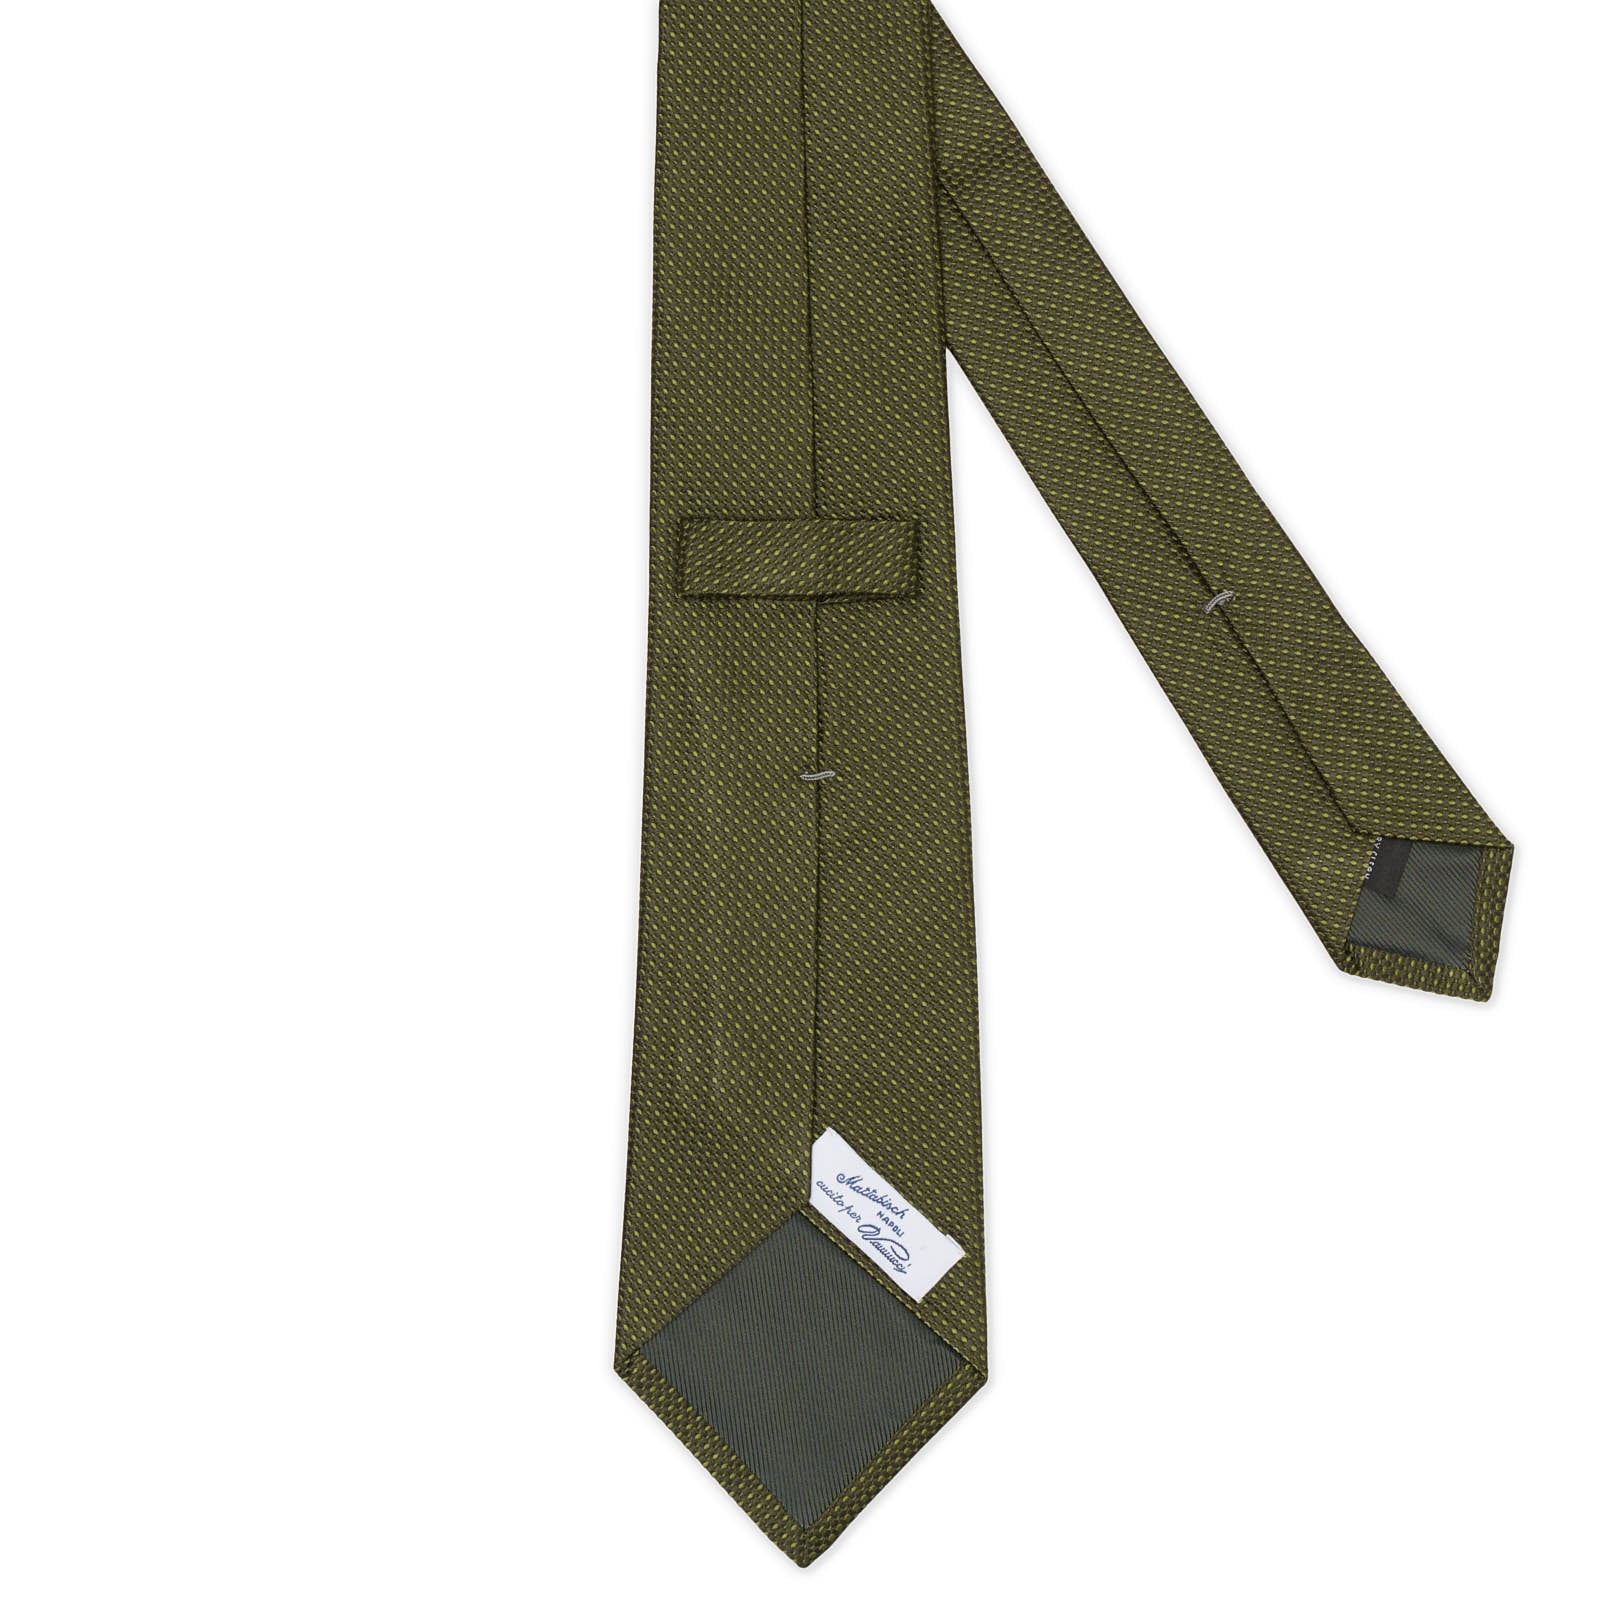 MATTABISCH FOR VANNUCCI Olive Green Silk Tie NEW